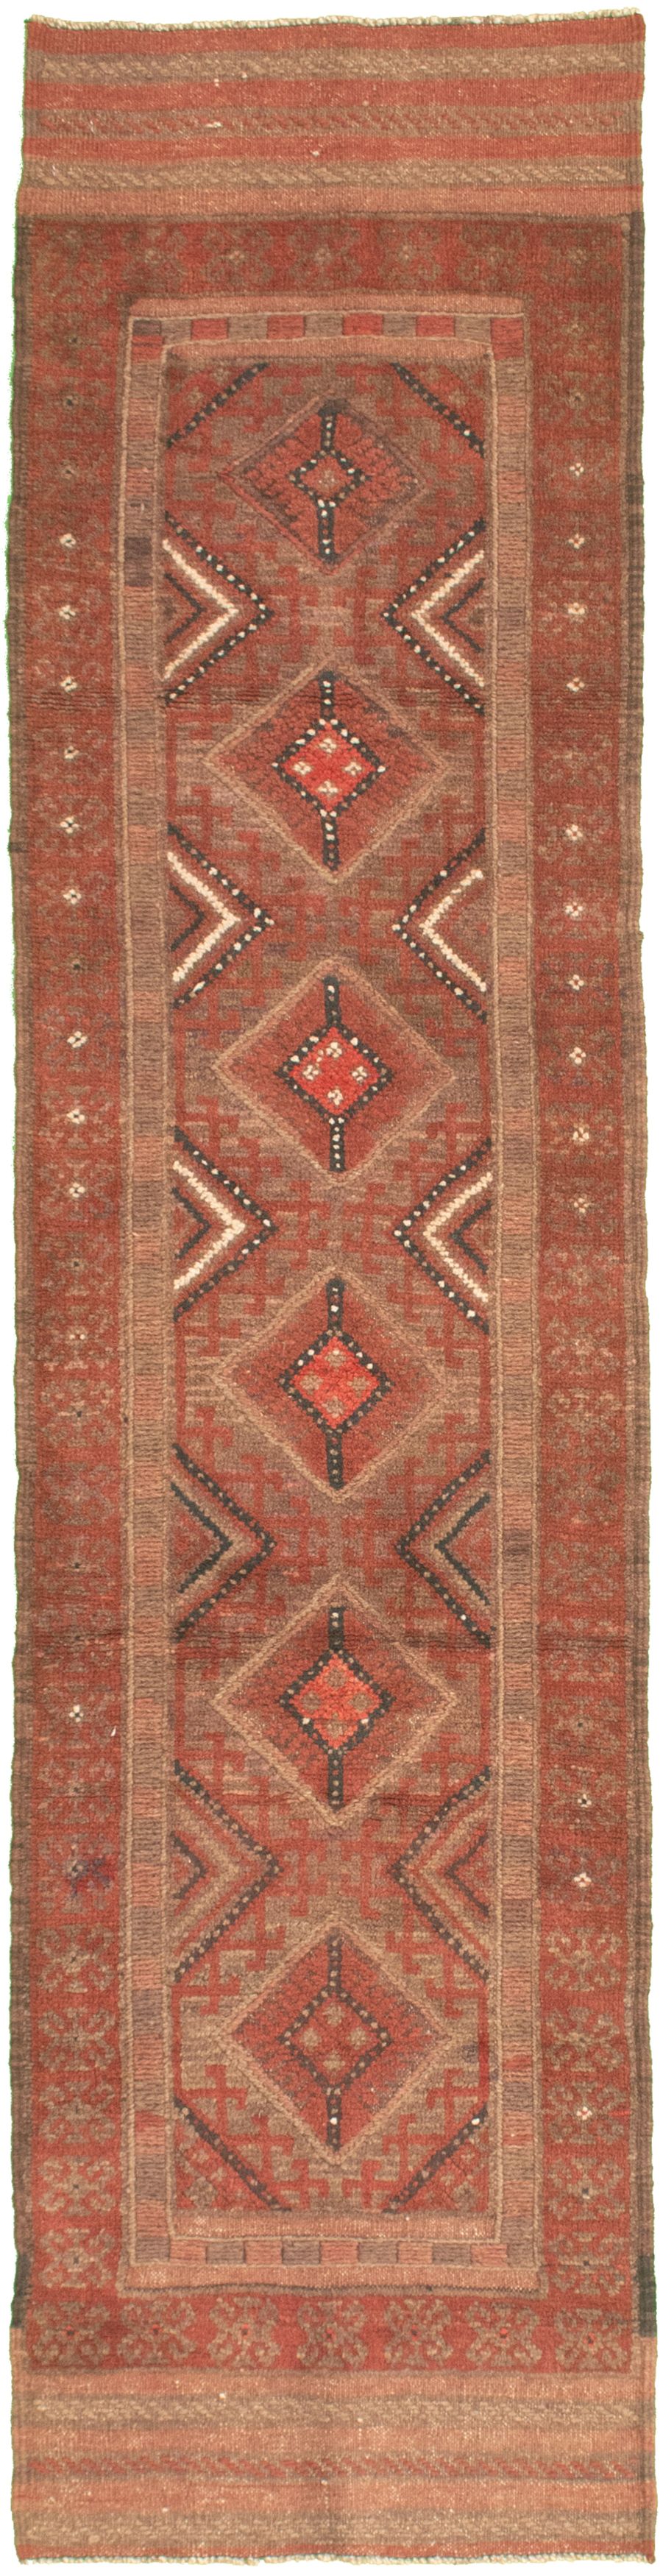 Hand-knotted Tajik Caucasian Khaki Wool Rug 2'0" x 8'10" Size: 2'0" x 8'10"  